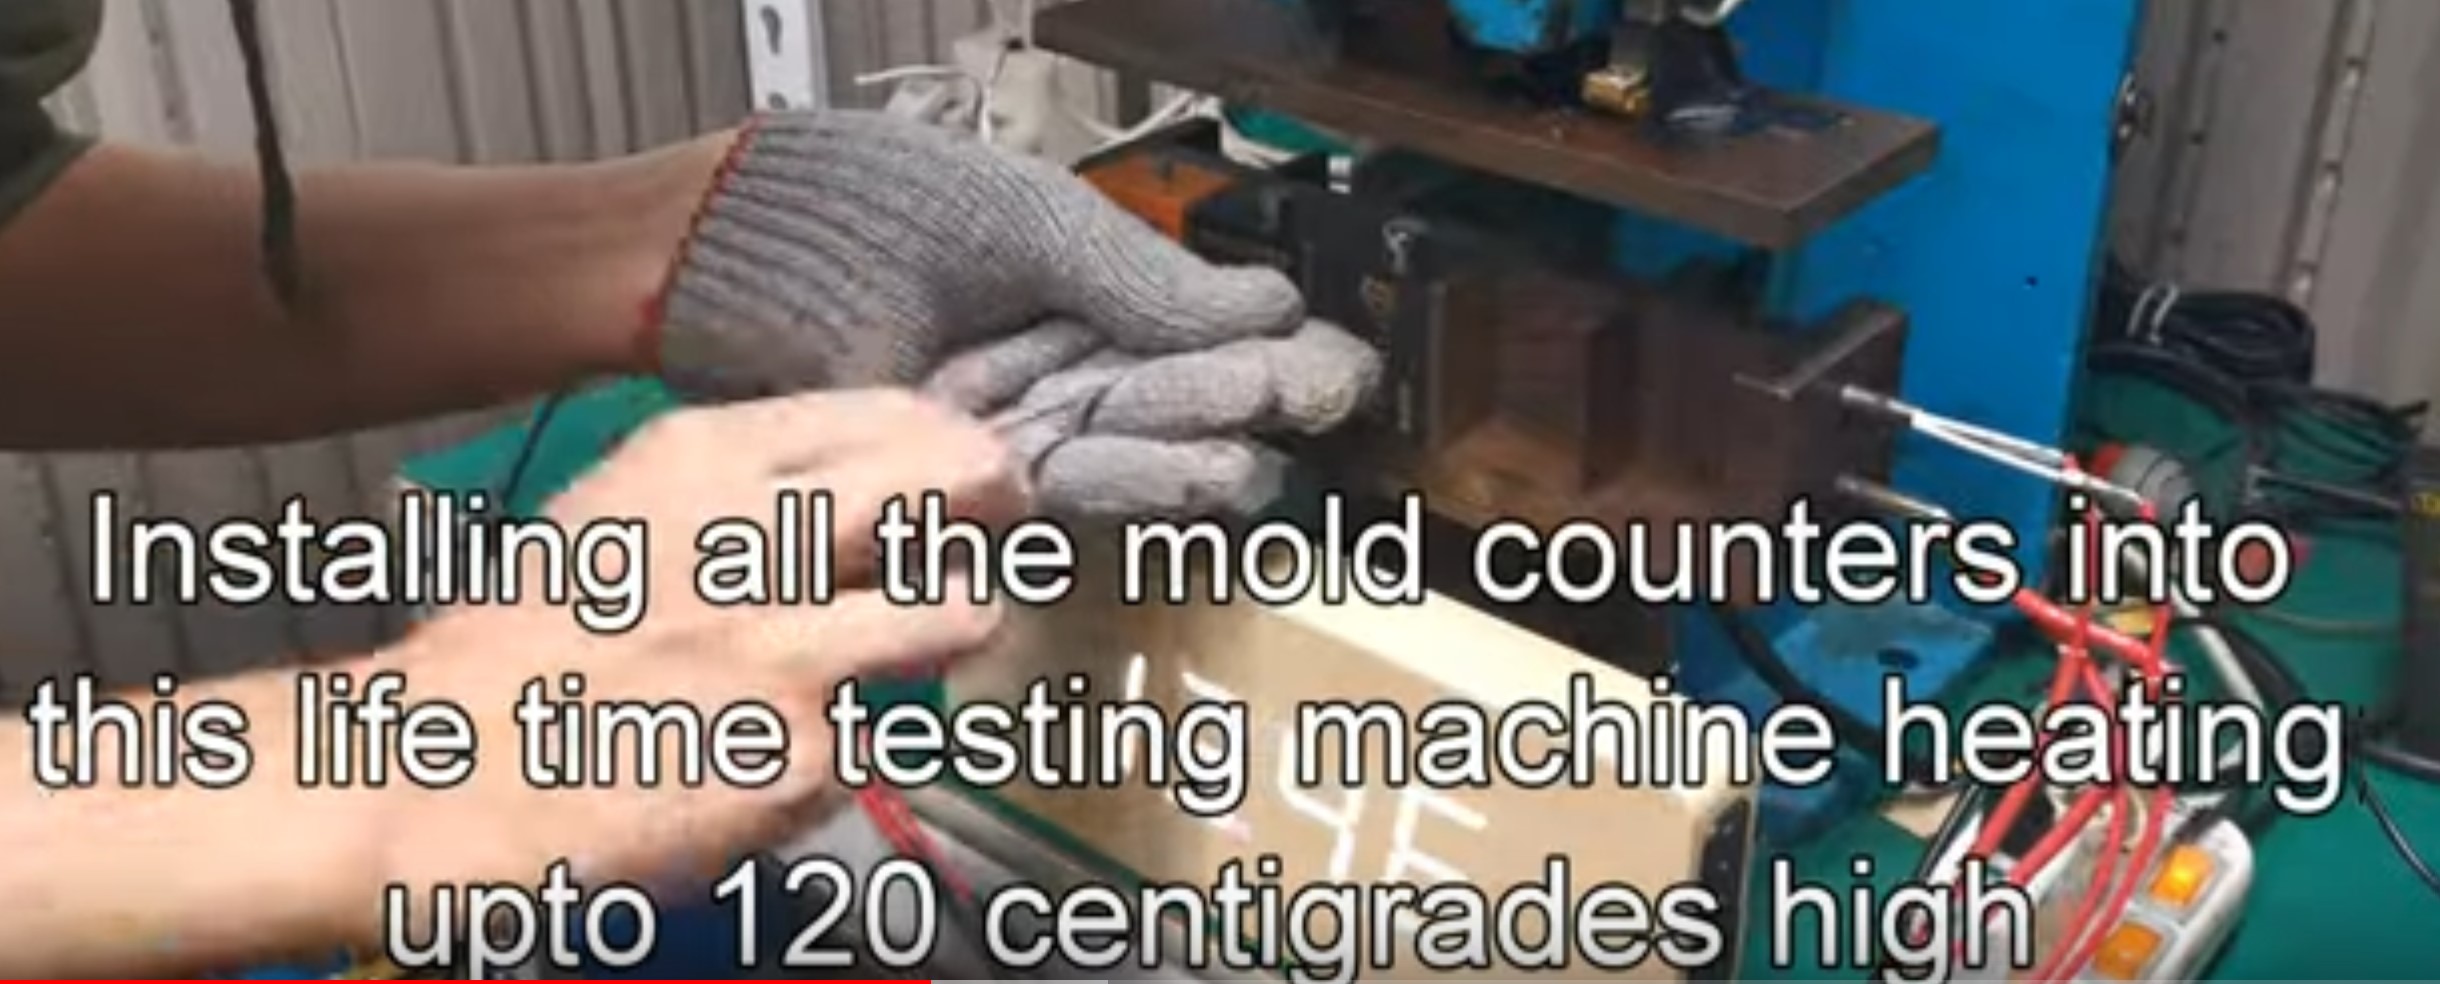 moldcounter copier compare01